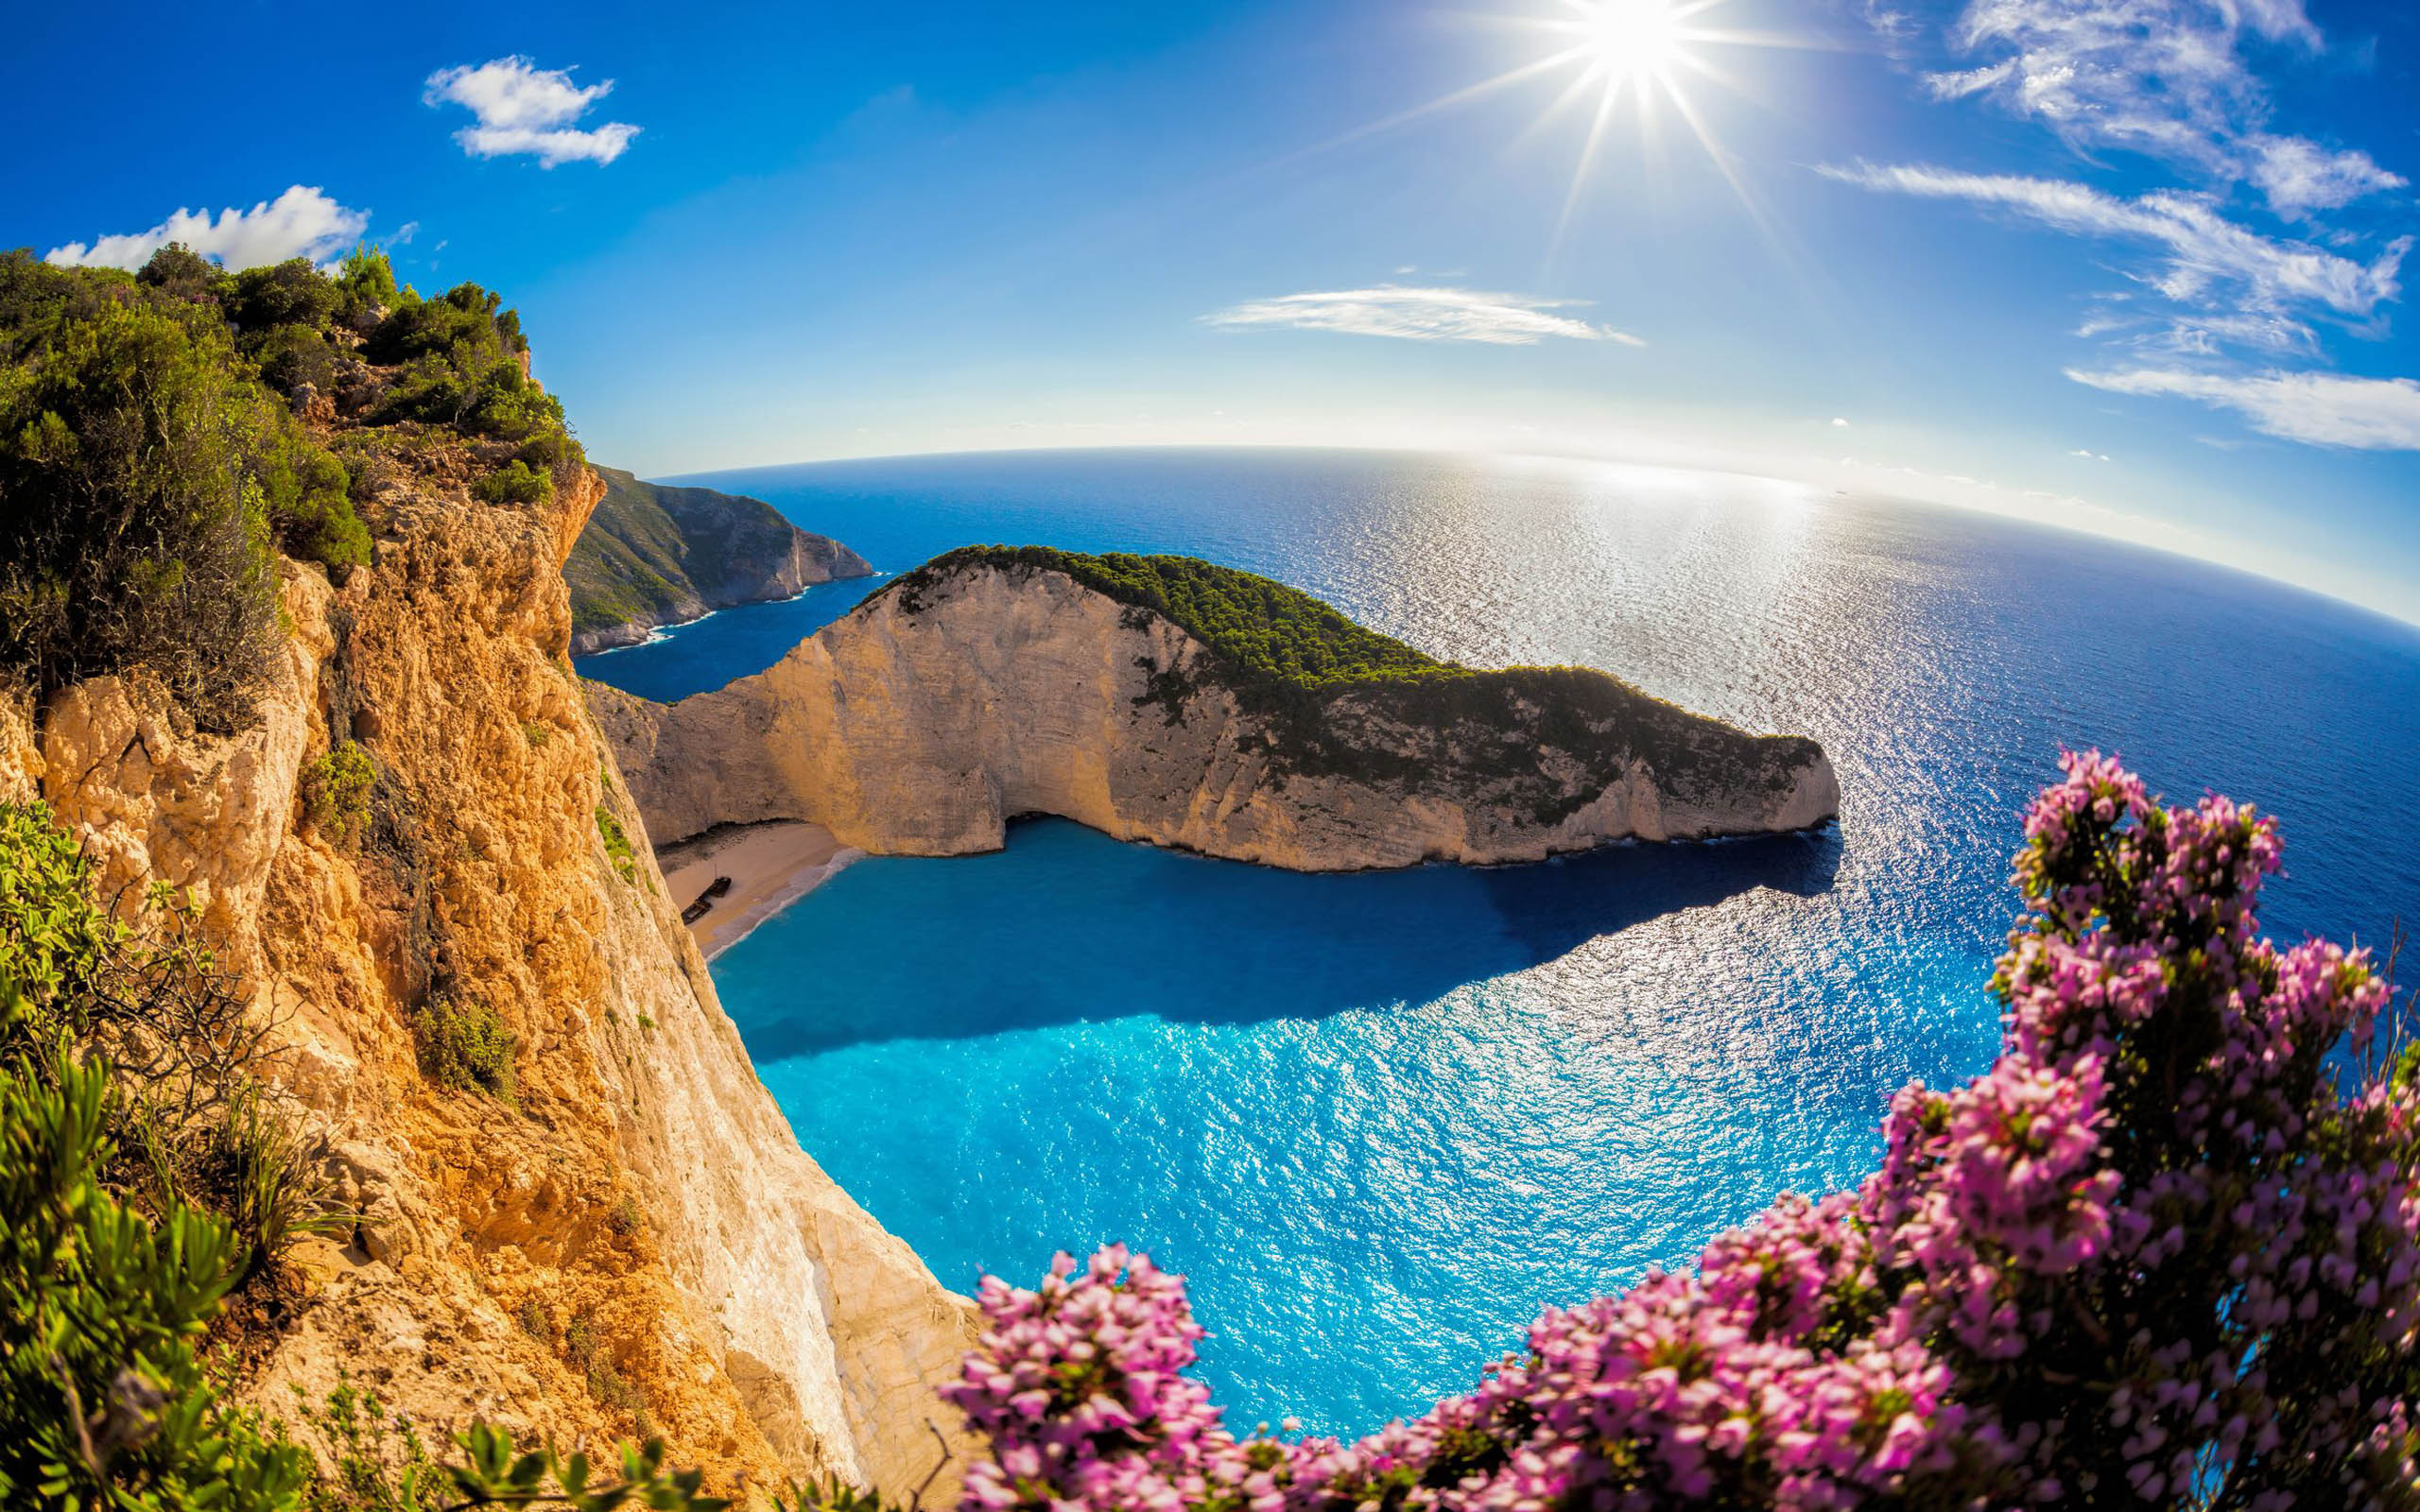 Zakinthos Island - một trong những bãi biển đẹp nhất Hy Lạp với động đá vôi và nước xanh biếc trong cùng với những ngọn đồi đá xung quanh. Cùng với bức hình nền Zakynthos Island Greece Beach này, hãy cảm nhận được đủ sức mạnh và giá trị của thiên nhiên Hy Lạp.